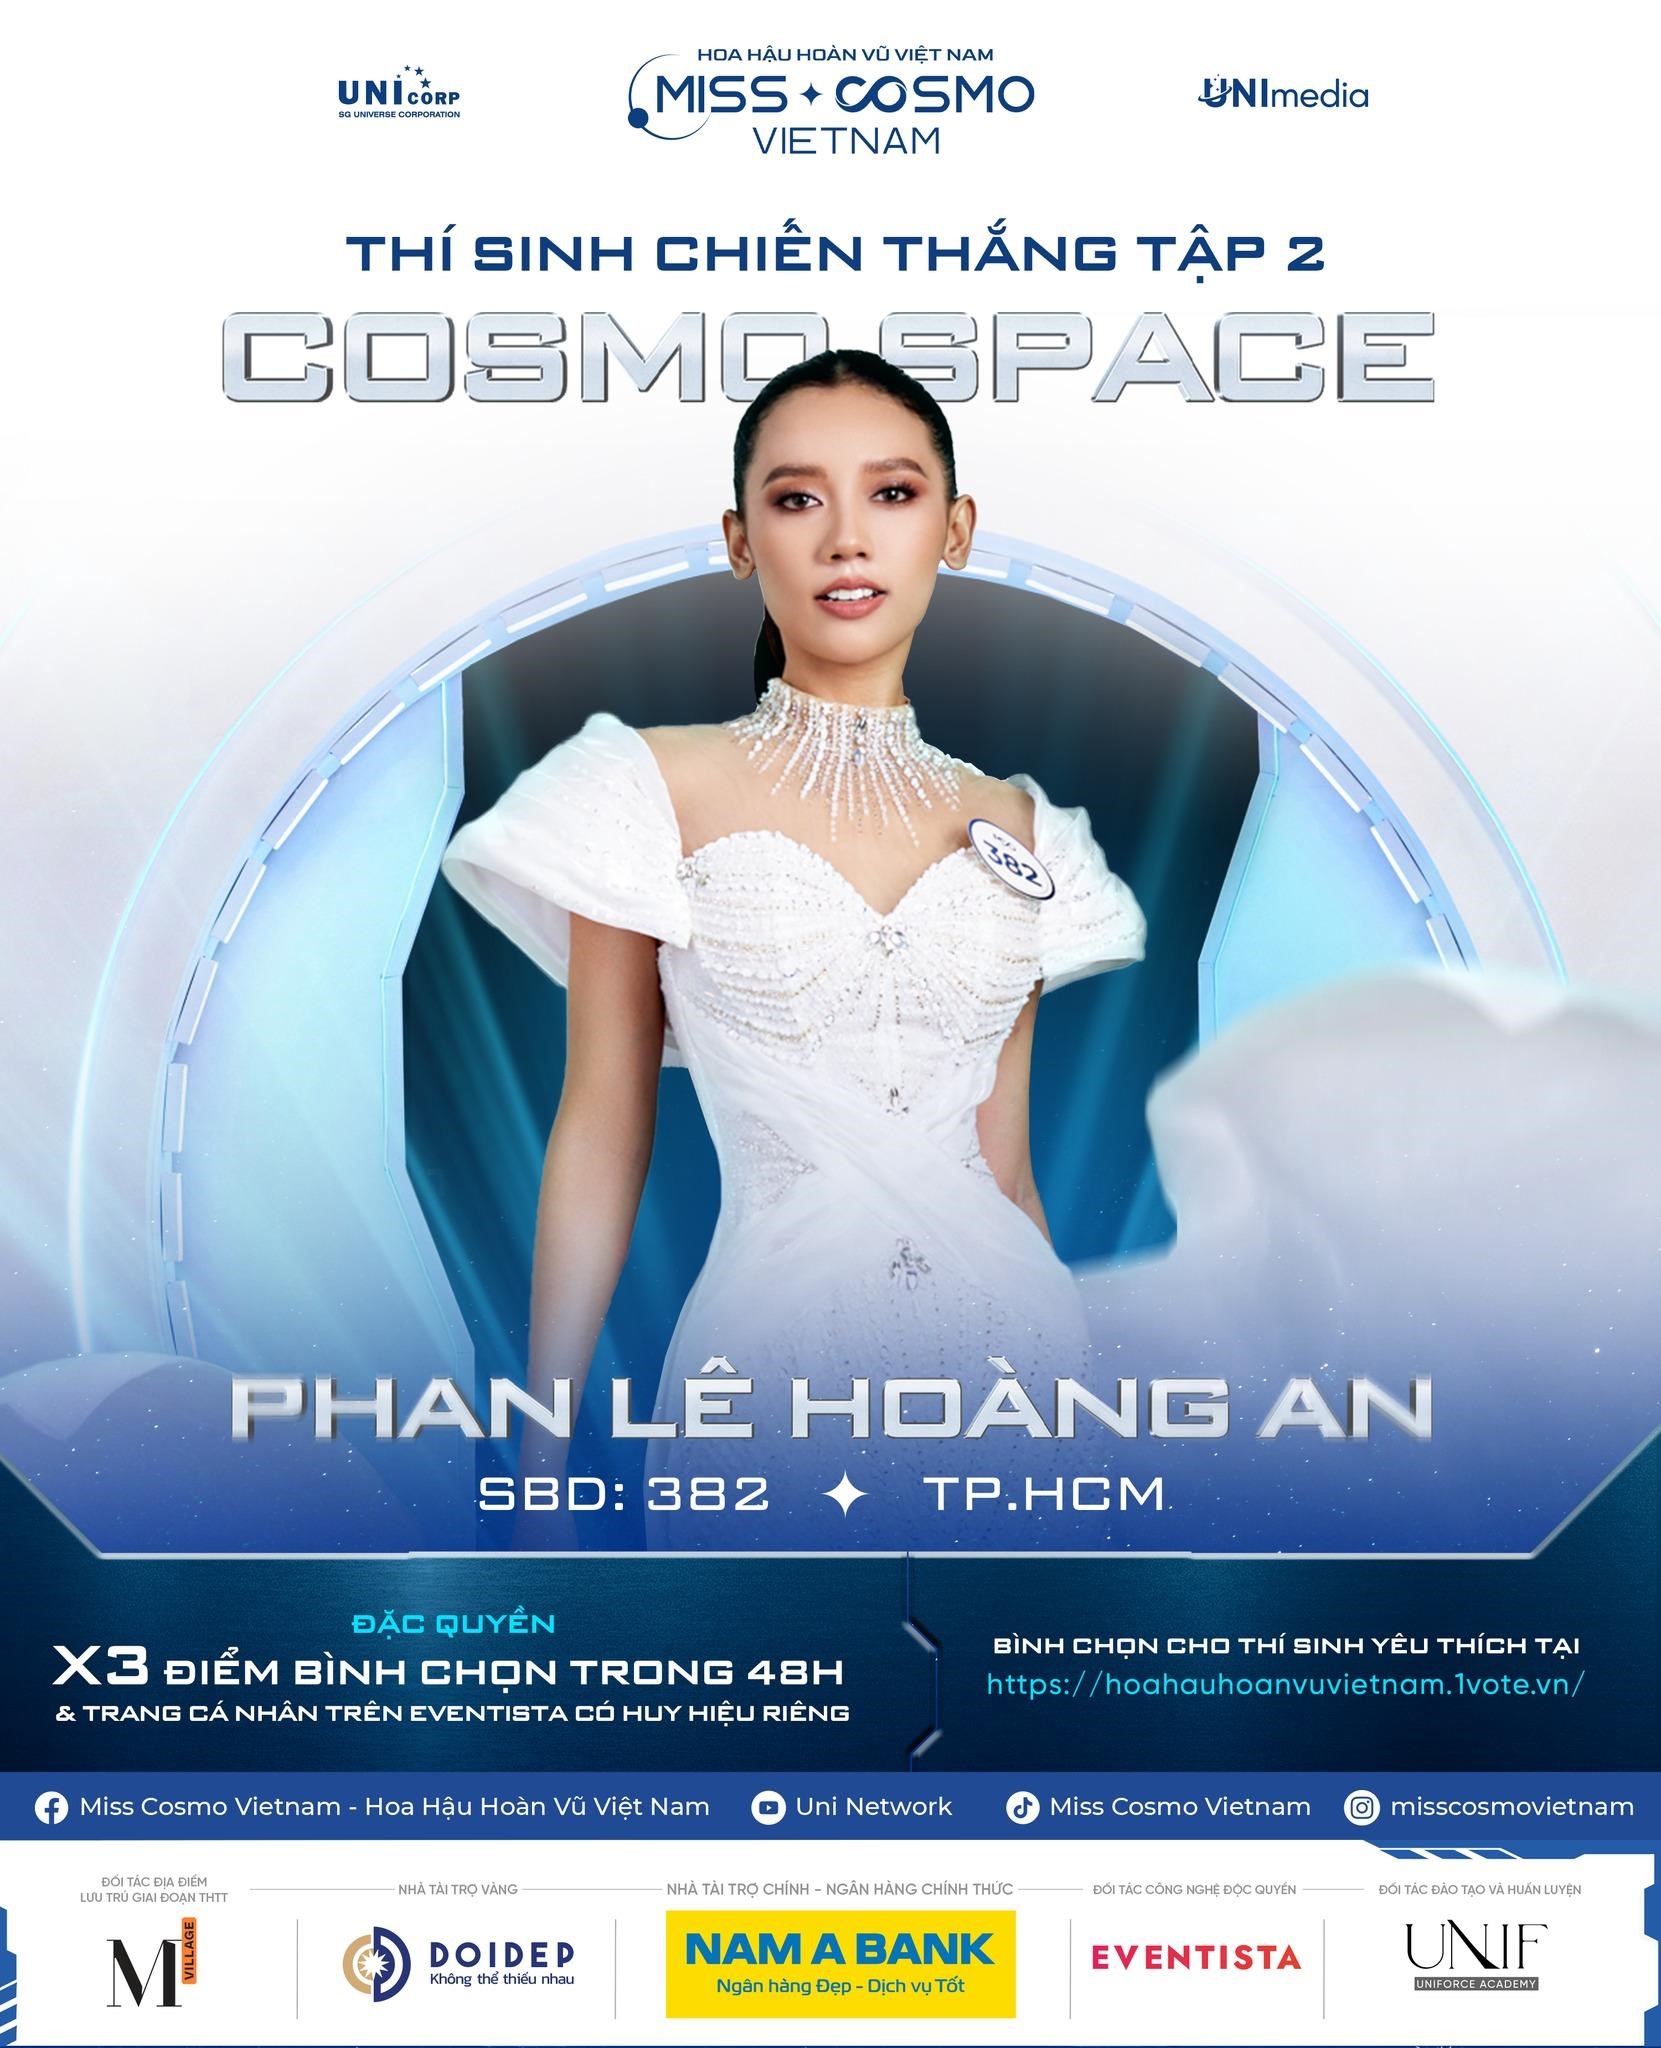 Sau chiến thắng Tập 2, Phan Lê Hoàng An dẫn đầu bảng xếp hạng "Thí sinh được yêu thích nhất" qua cổng bình chọn Eventista